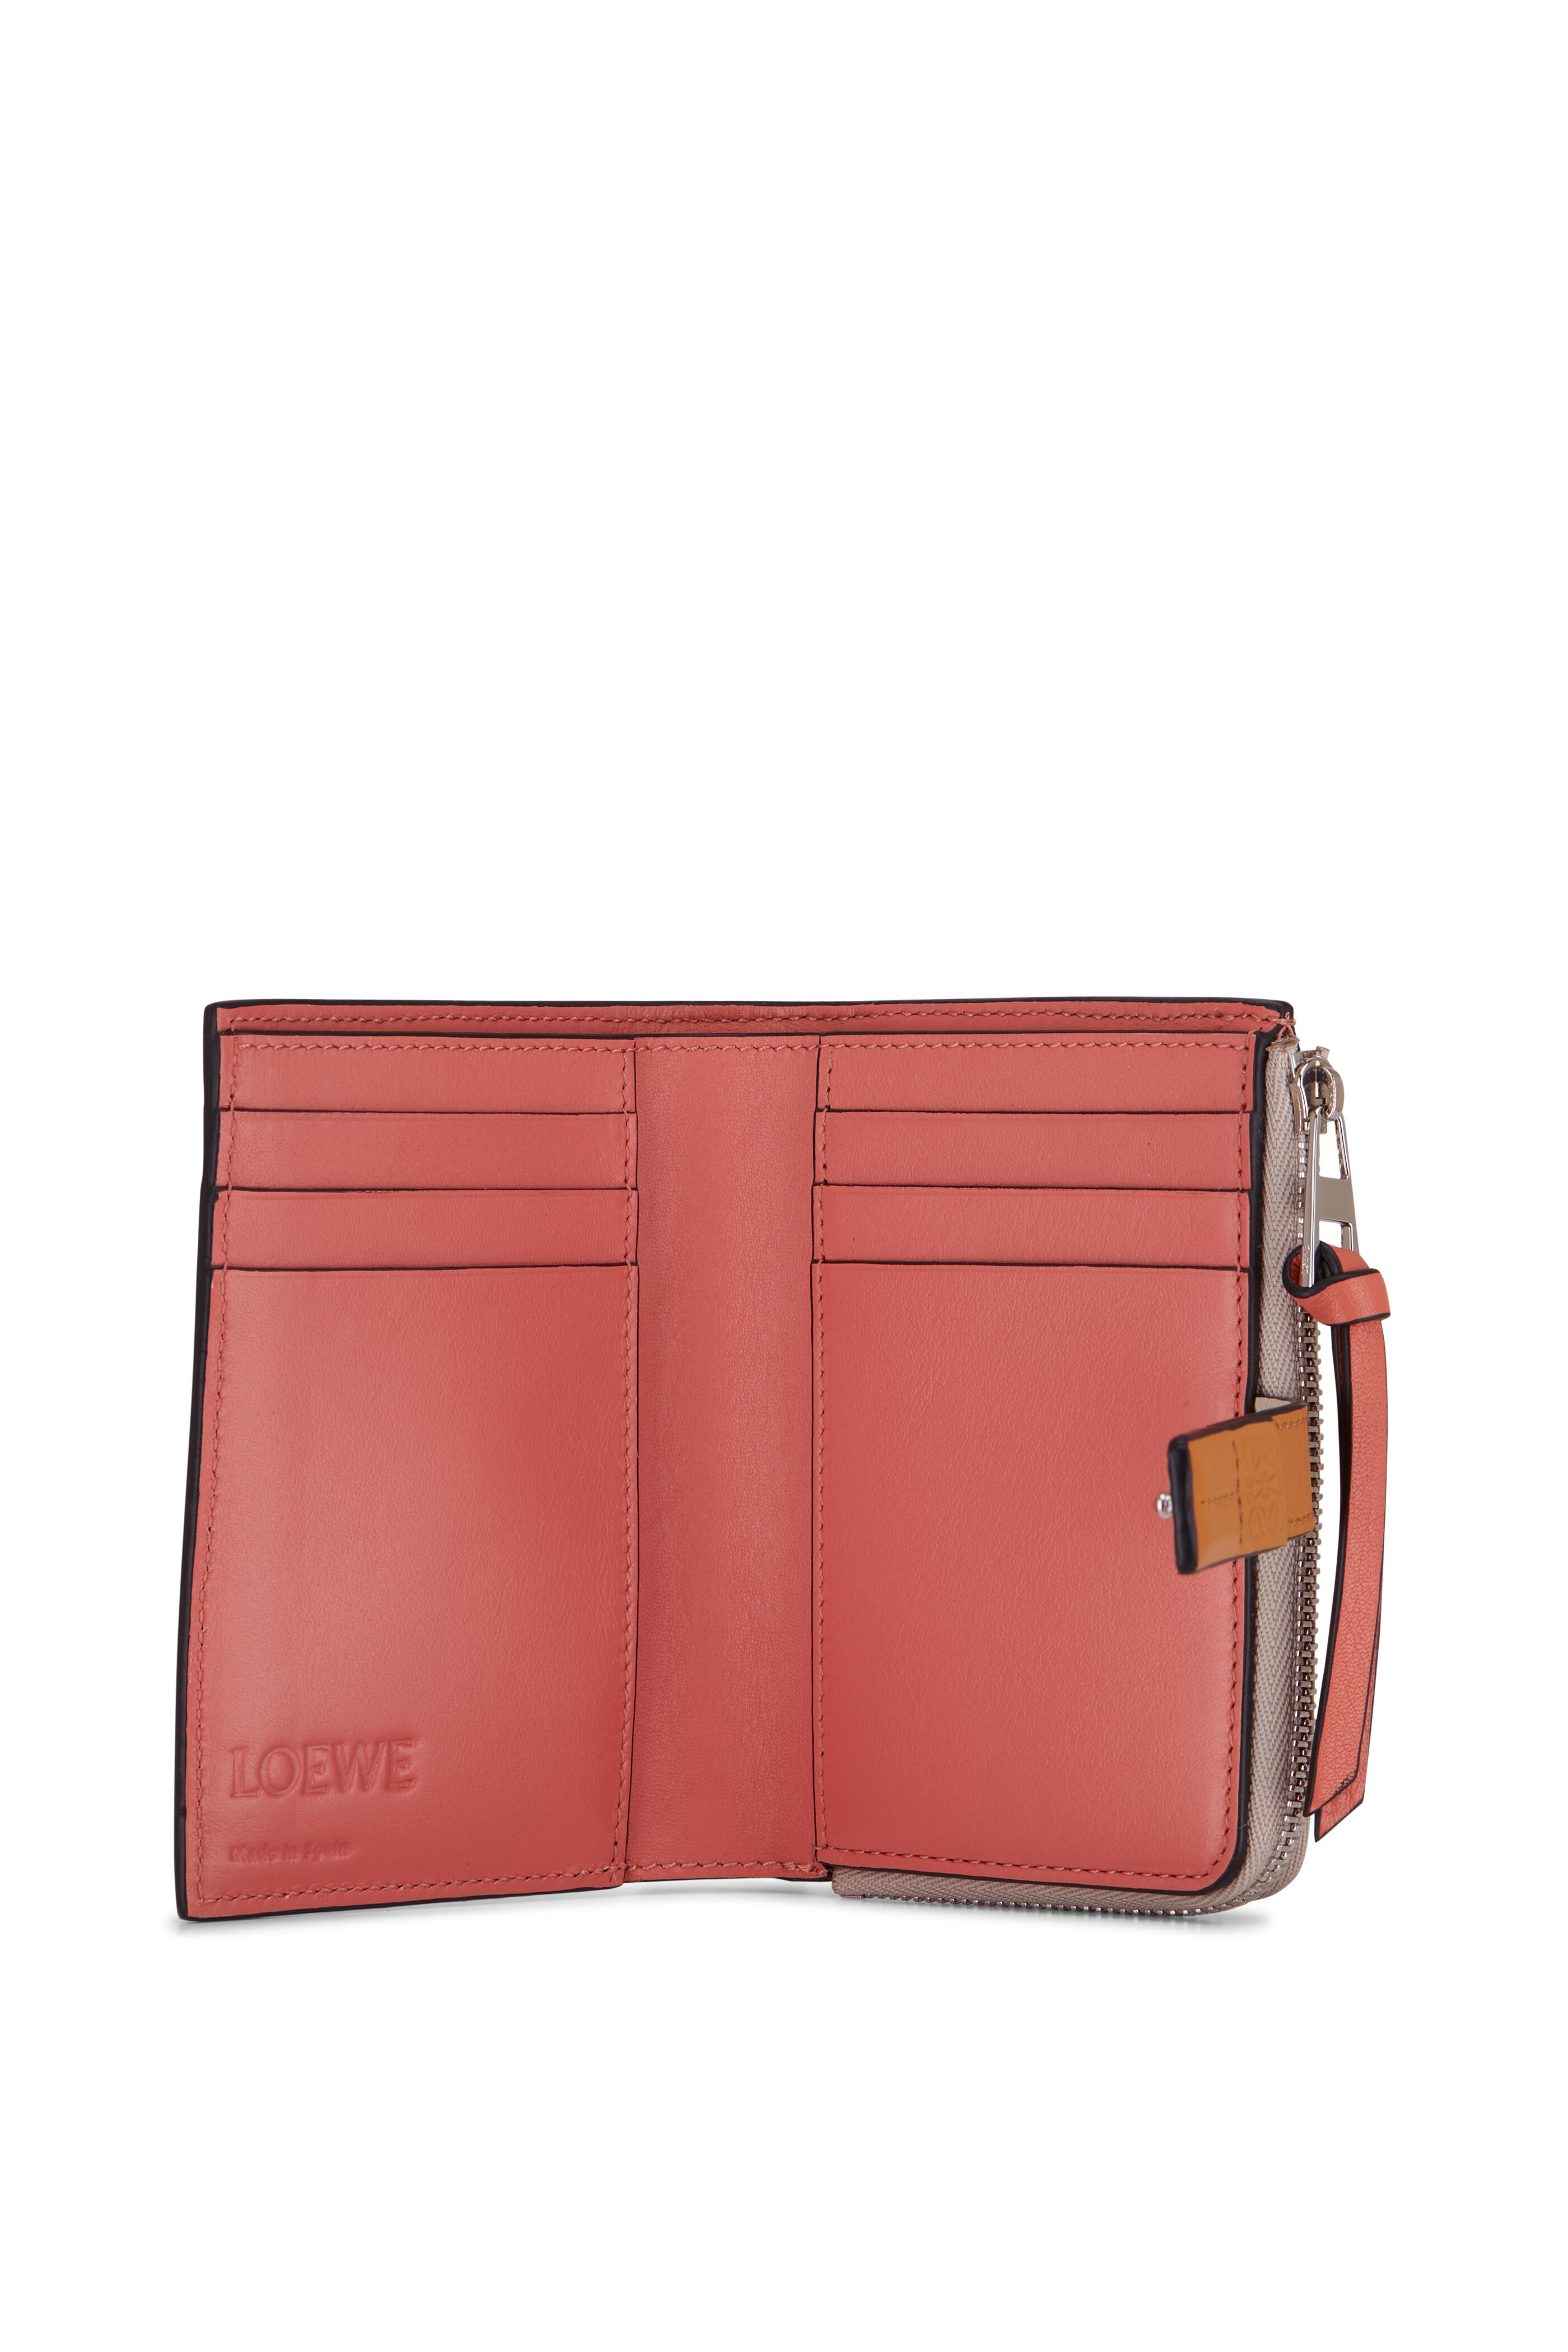 Prada Bi-Fold Tab Wallet Review 